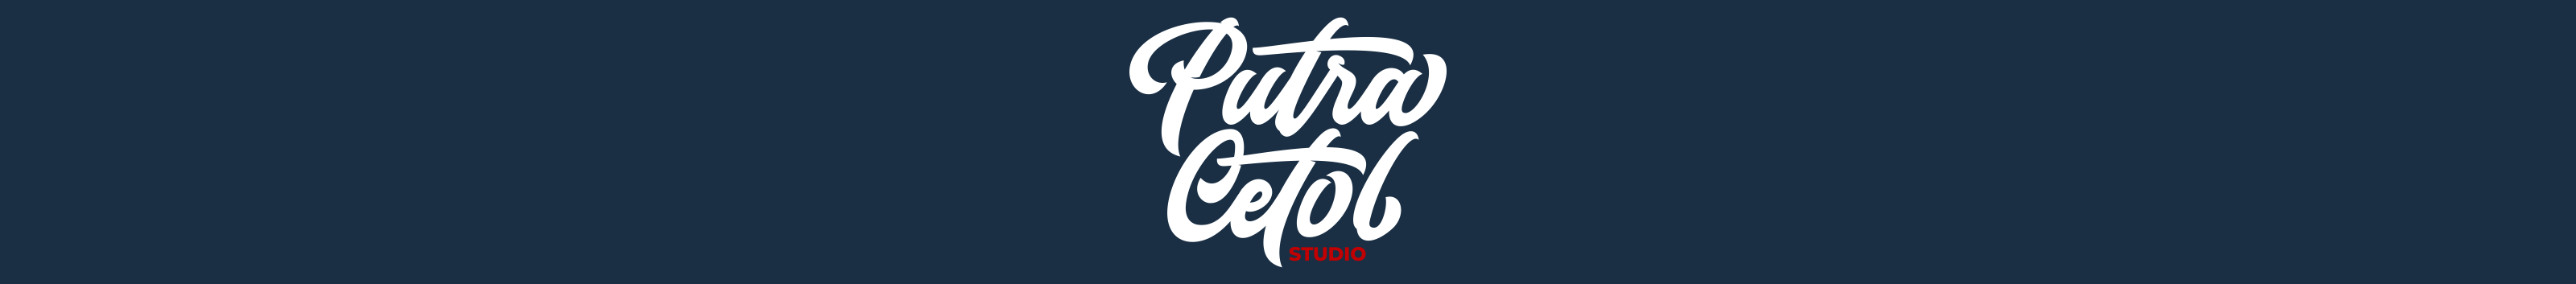 PutraCetol Studio 的個人檔案橫幅